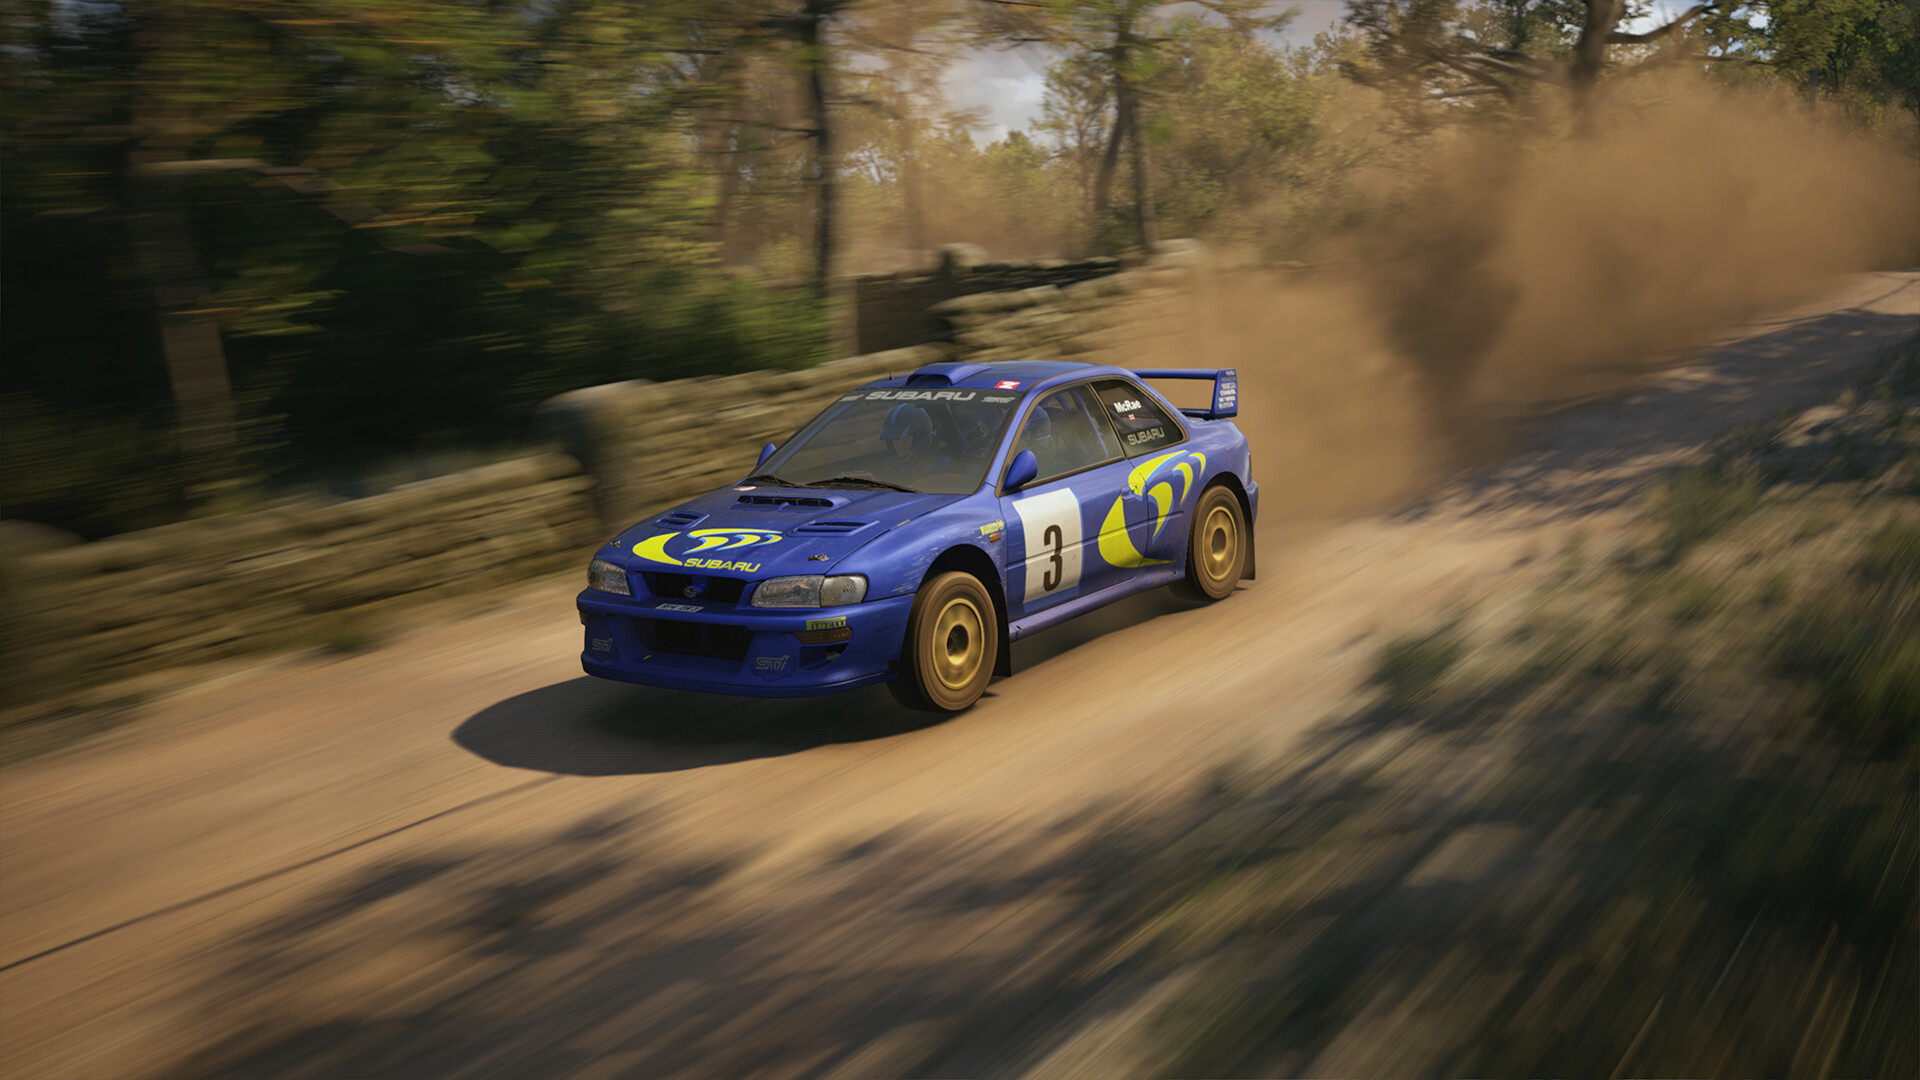 EA Sports WRC - Reveal Trailer